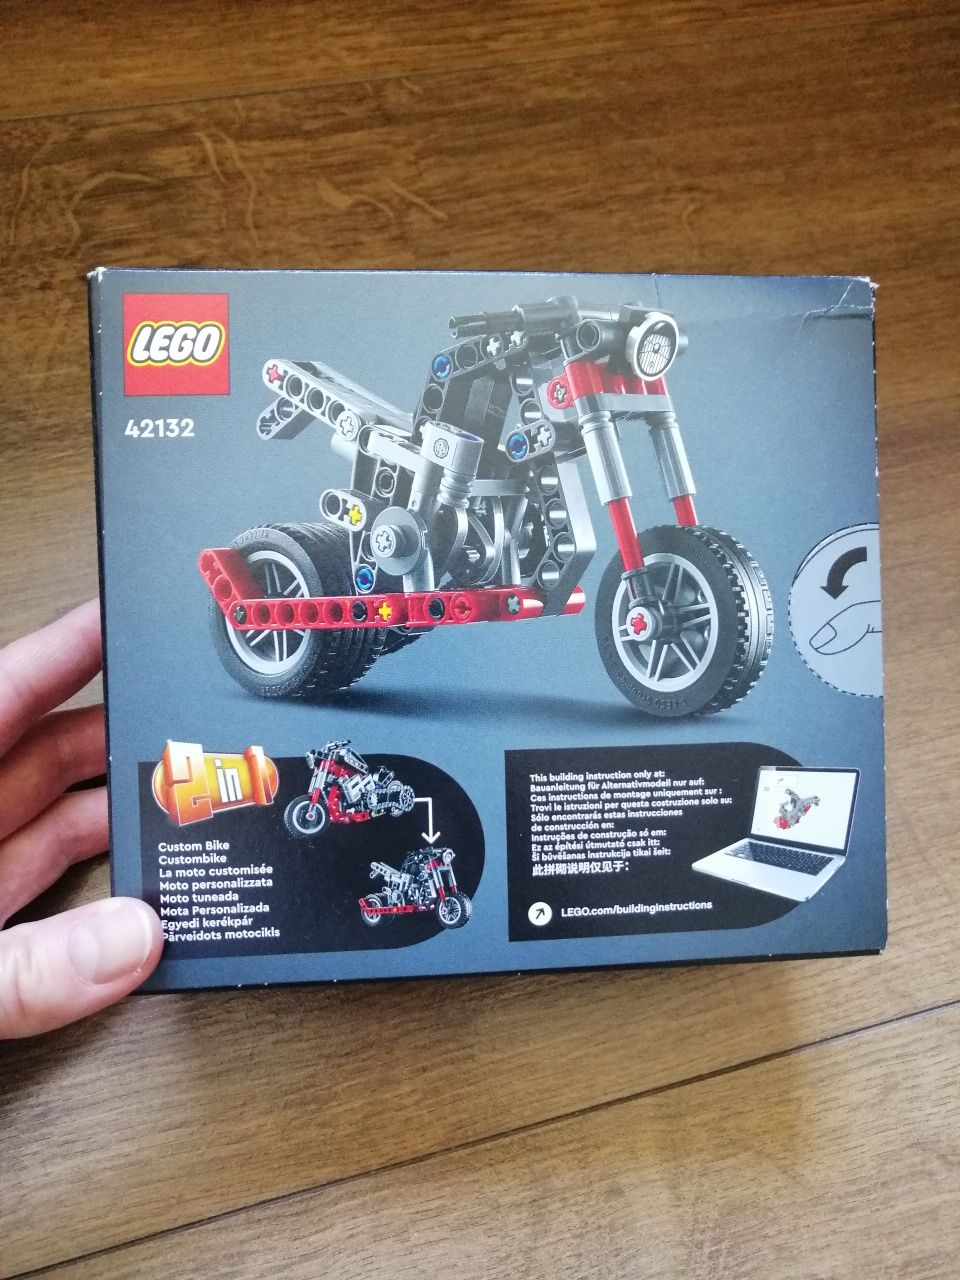 NOWE klocki LEGO TECHNIC Motorcycle 2w1 42132 wiek 7+